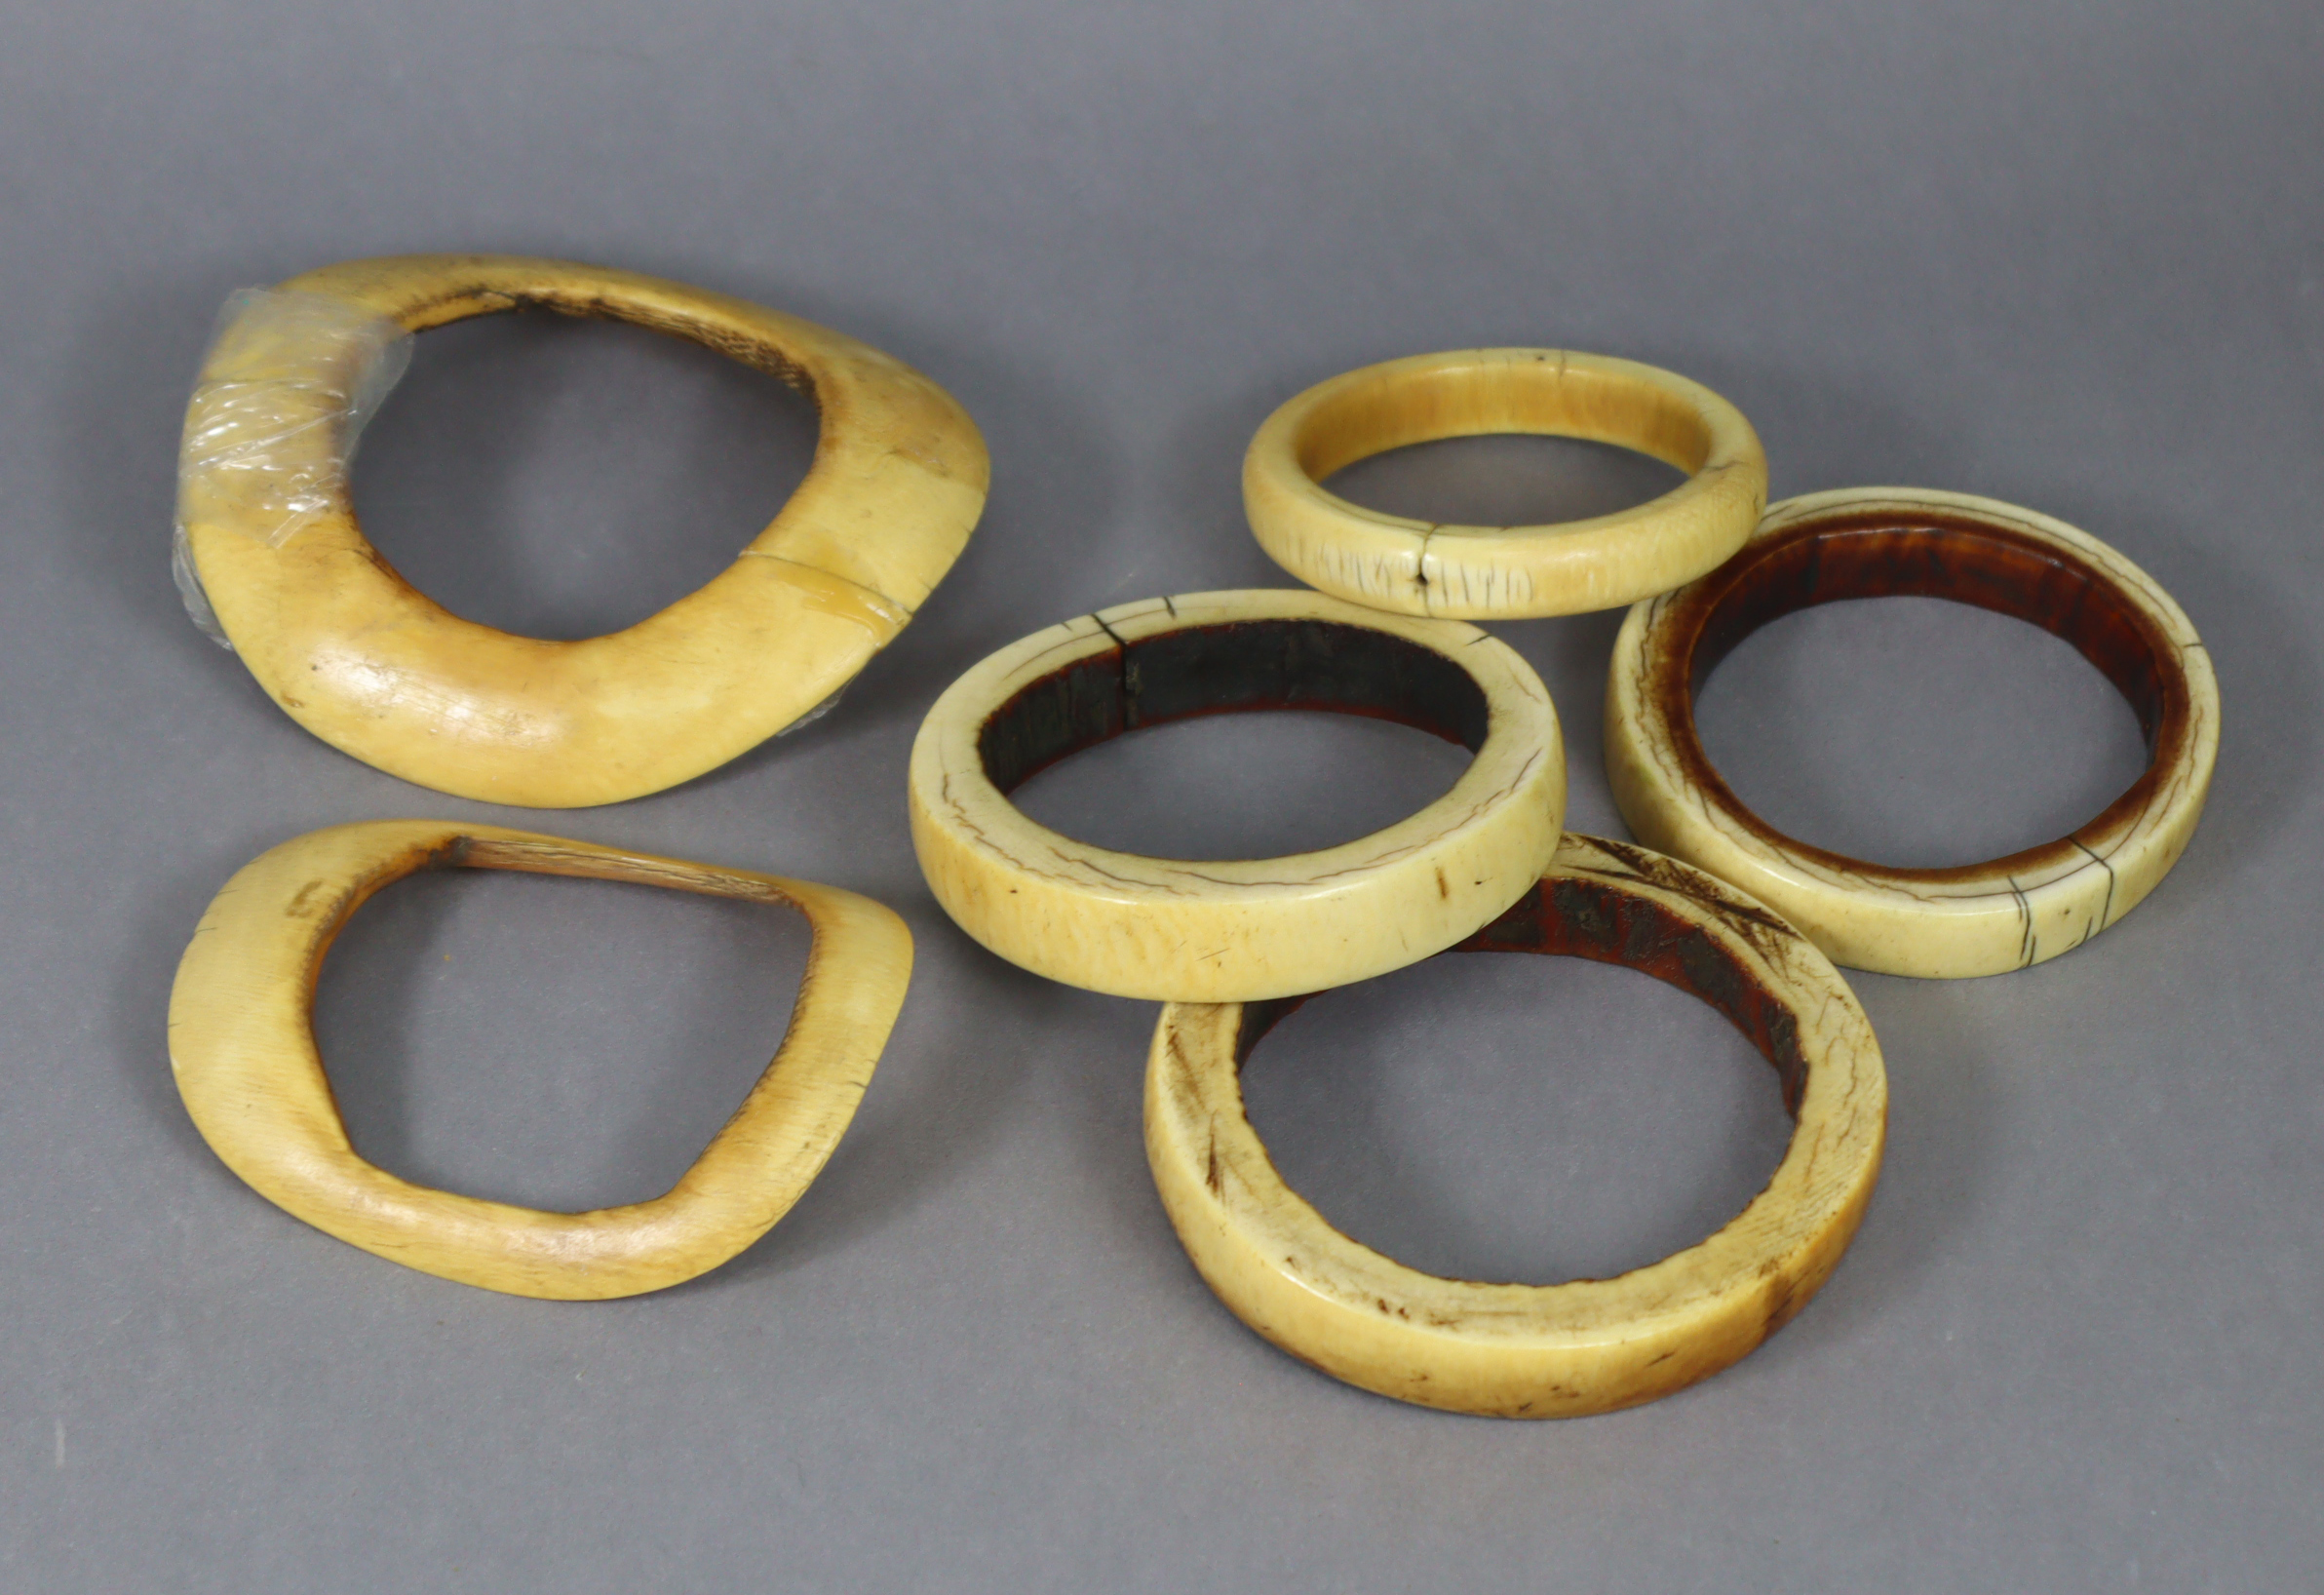 Six ethnic ivory bangles of various sizes.